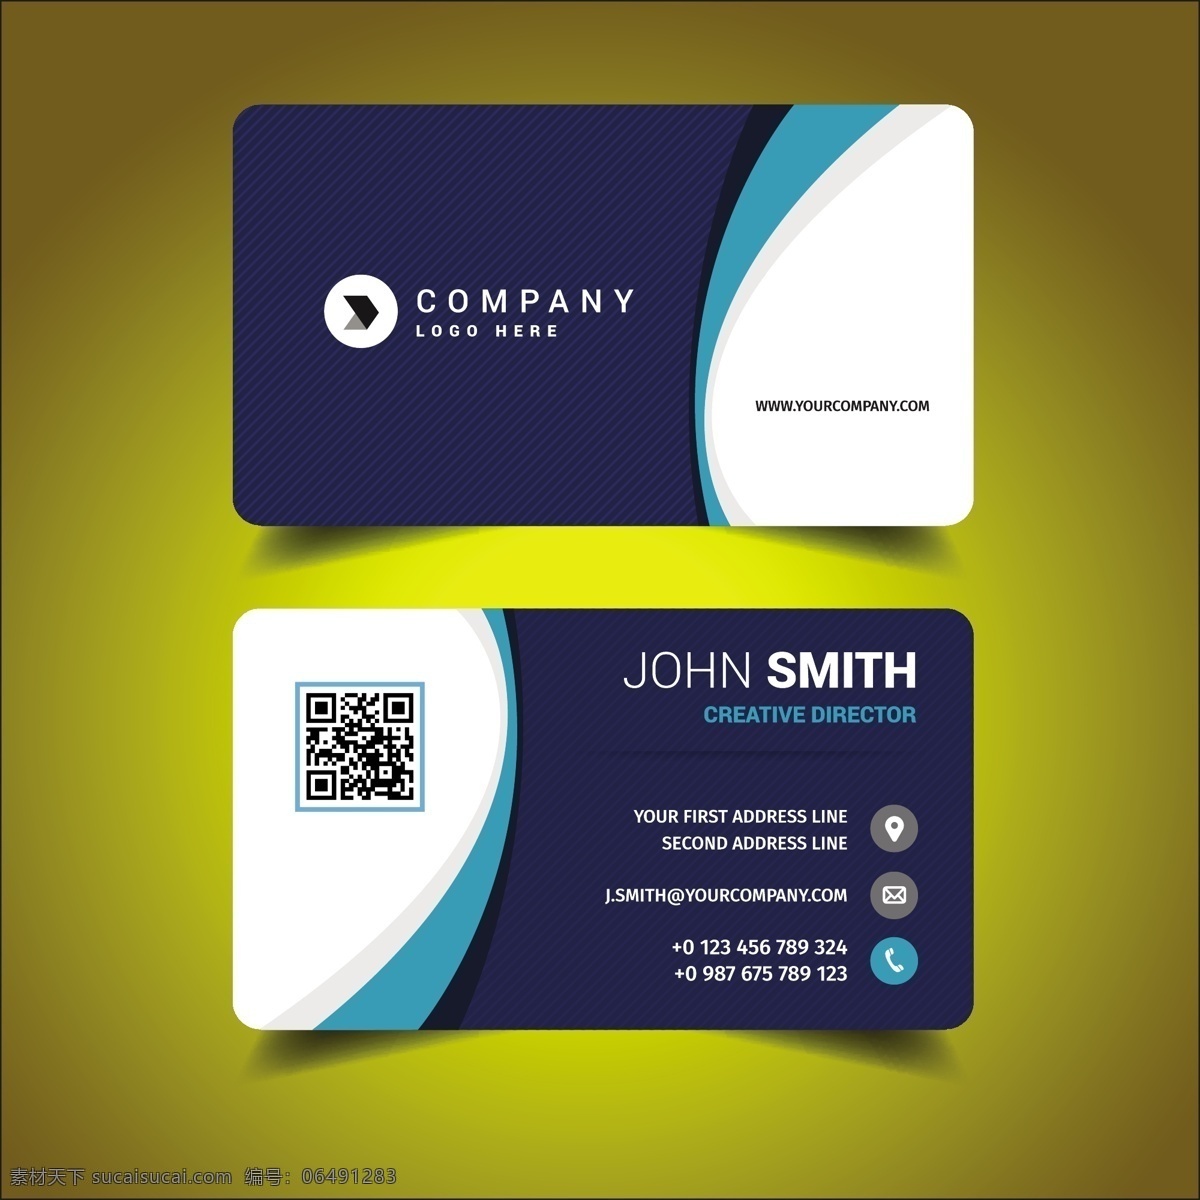 名片模板设计 商标 名片 商业 抽象 卡片 模板 蓝色 办公室 颜色 展示 文具 公司 抽象标志 企业标识 现代 身份 身份证